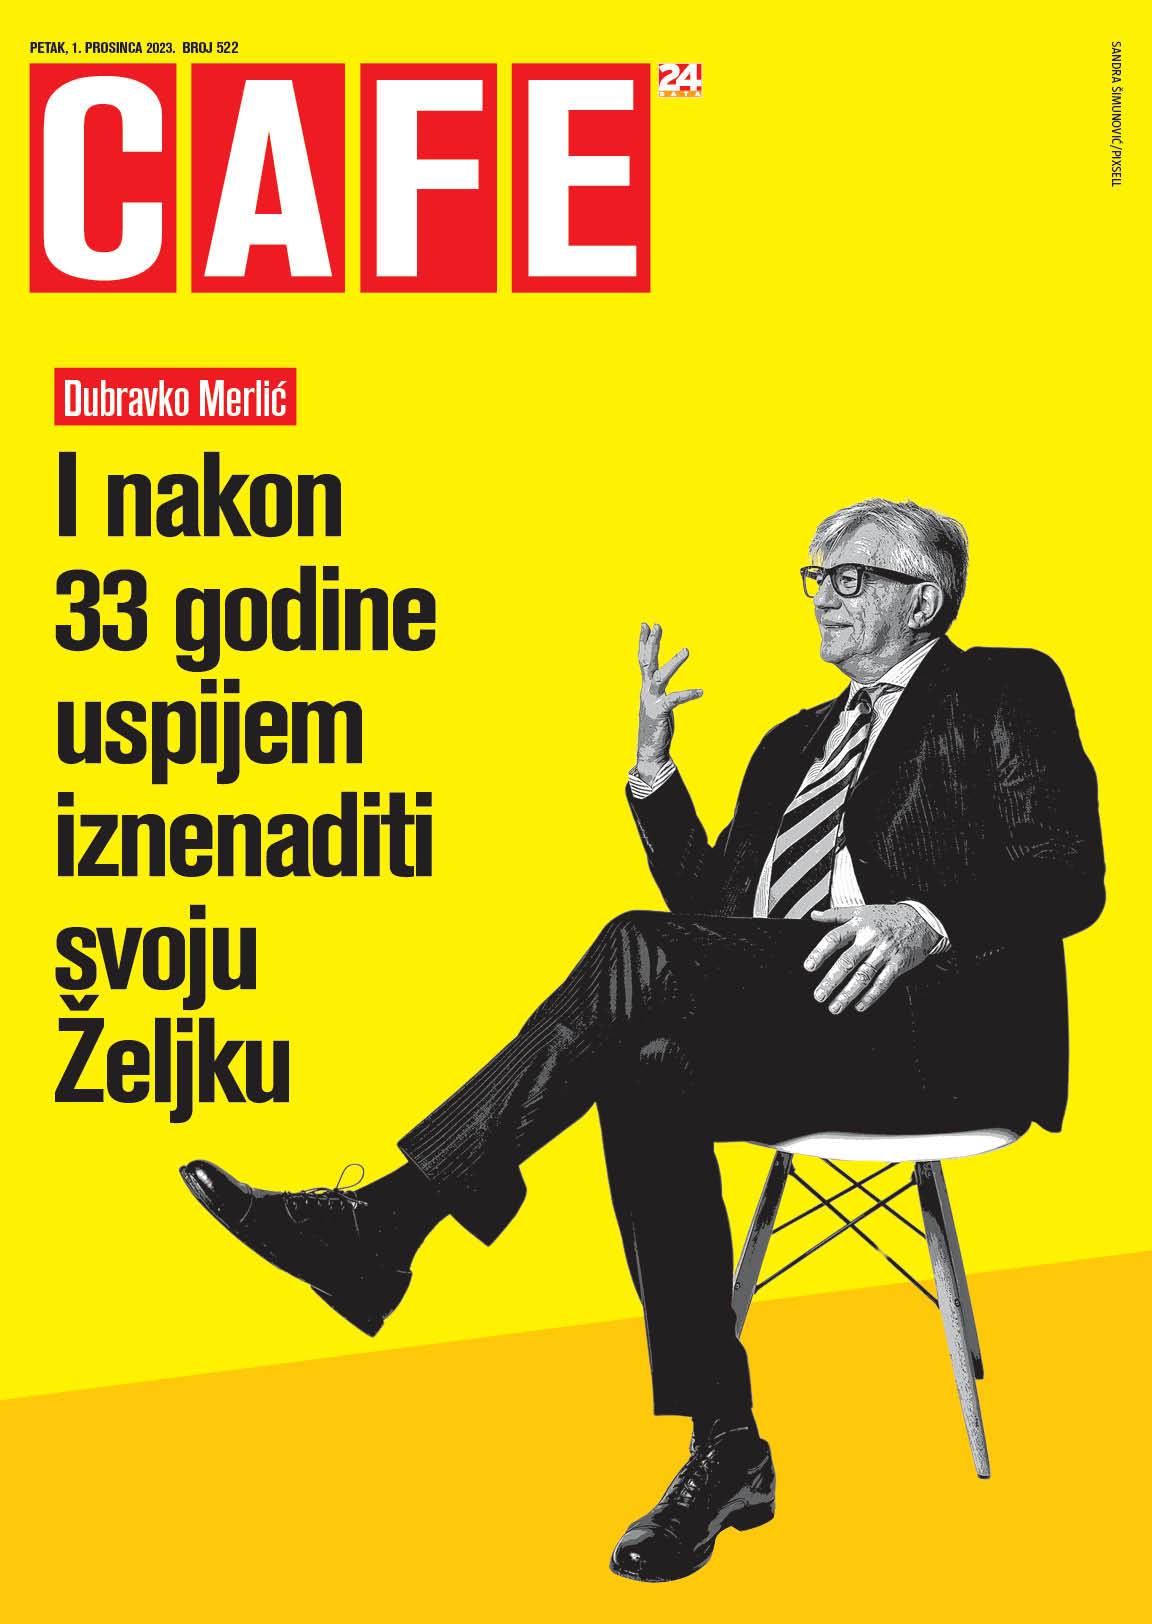 Dubravko Merlić pozirao je kao voditelj talk showova Dick Cavett: On je idol moje mladosti